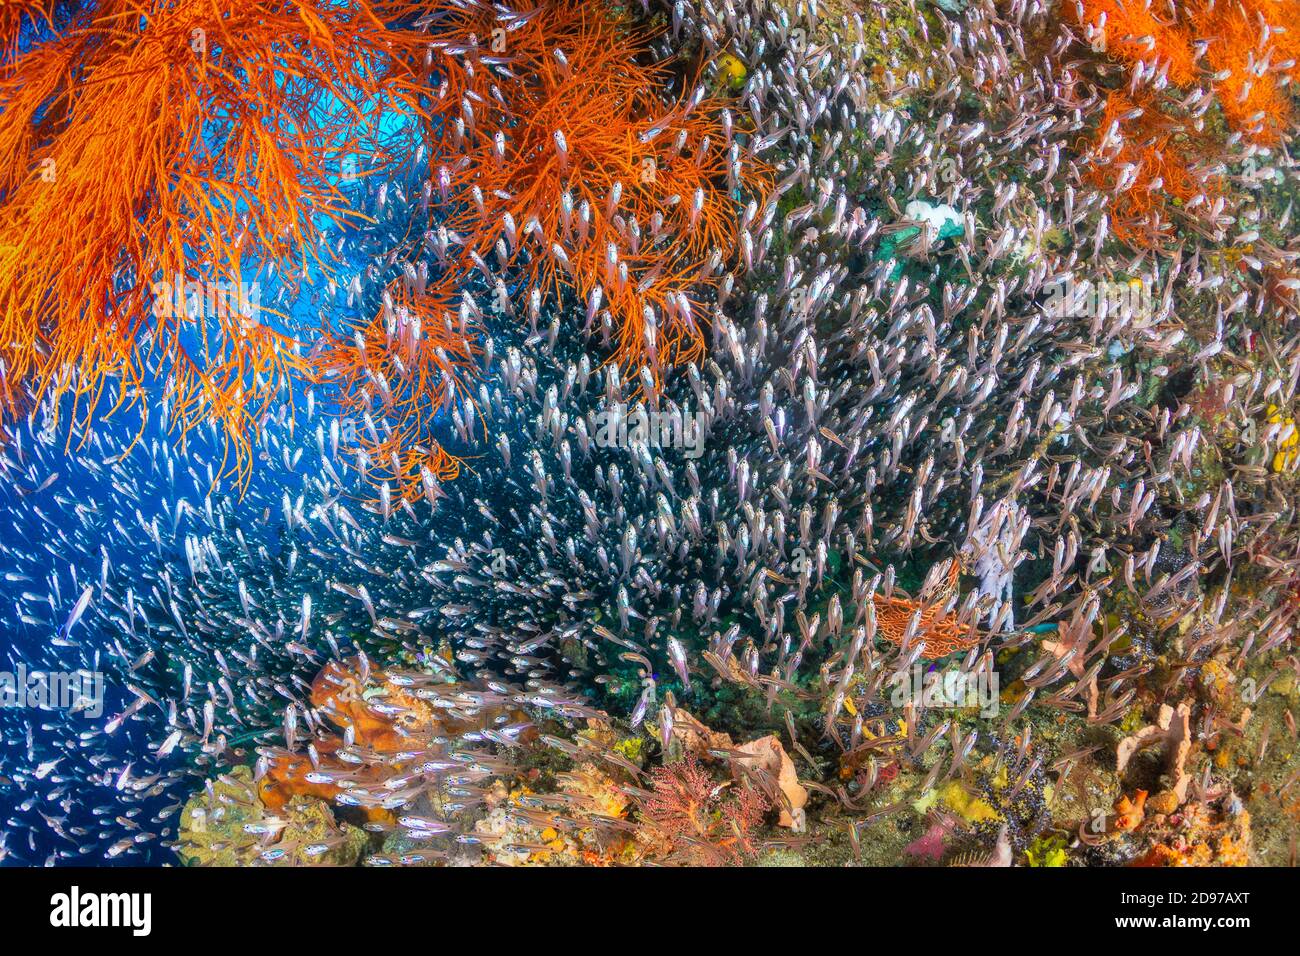 Arrecife de biodiversidad, foto que ilustra la abundancia de vida y biodiversidad de un arrecife de coral saludable, Micool, Raja Ampat, Indonesia Foto de stock